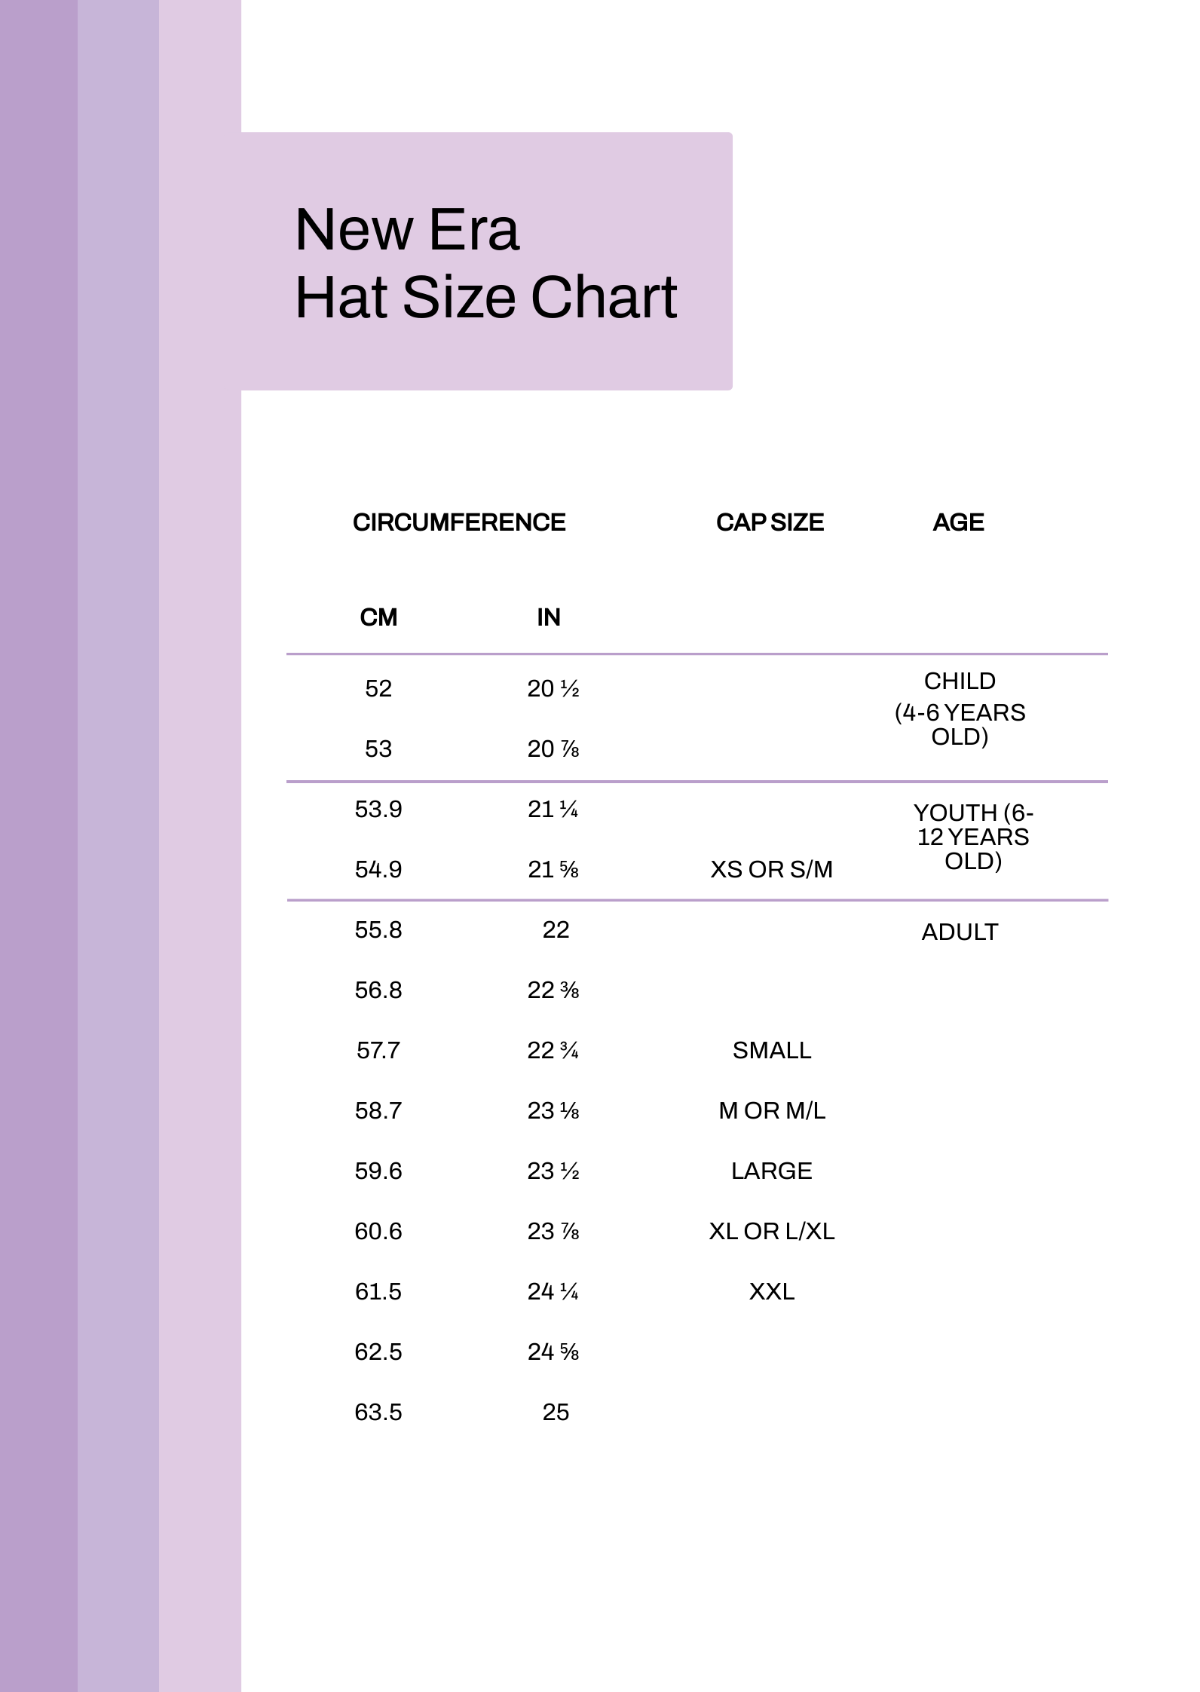 New Era Hat Size Chart Template